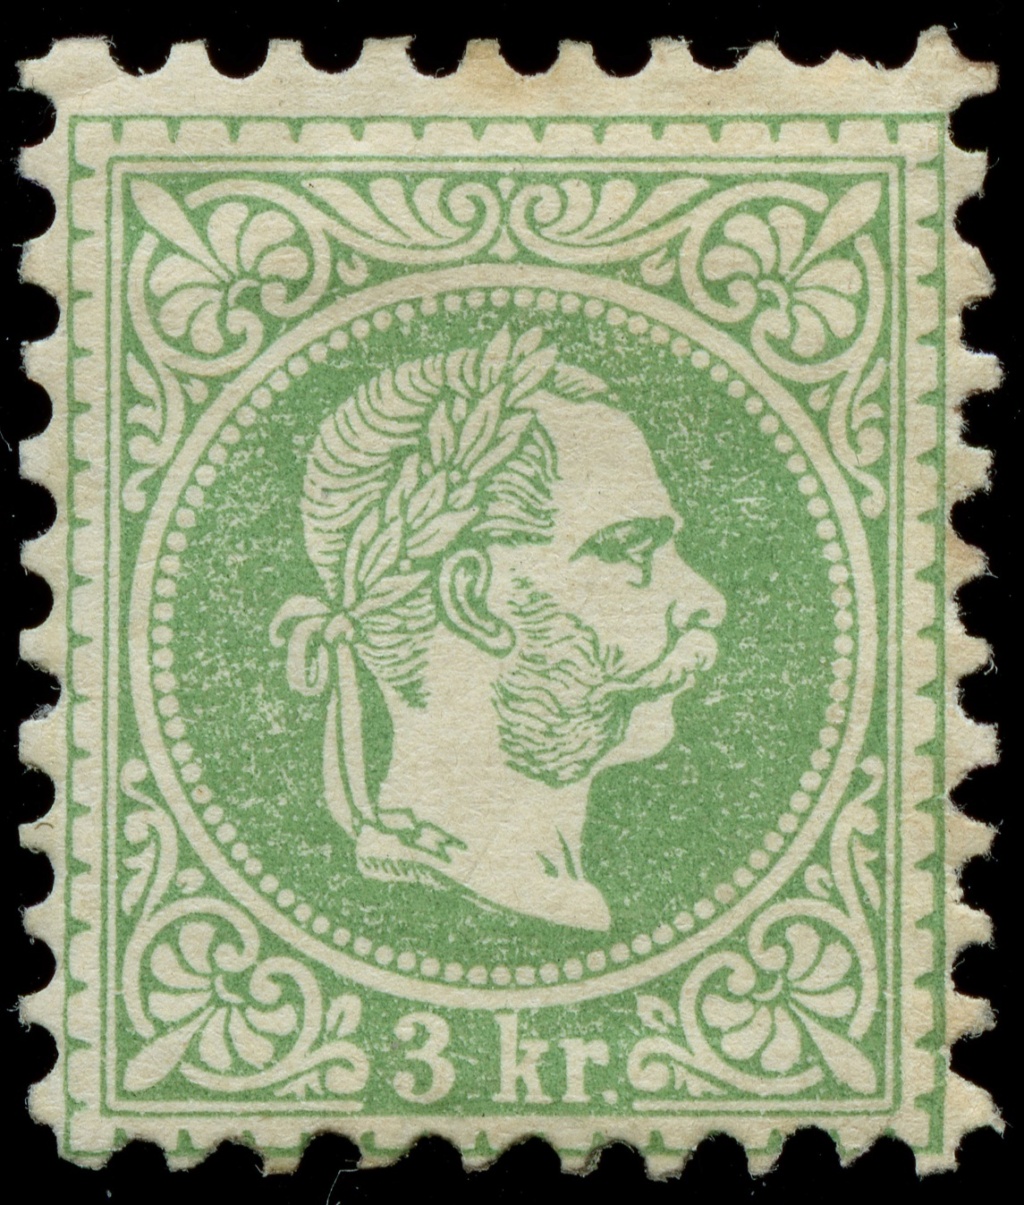 nach - Freimarken-Ausgabe 1867 : Kopfbildnis Kaiser Franz Joseph I - Seite 23 Ank_3625